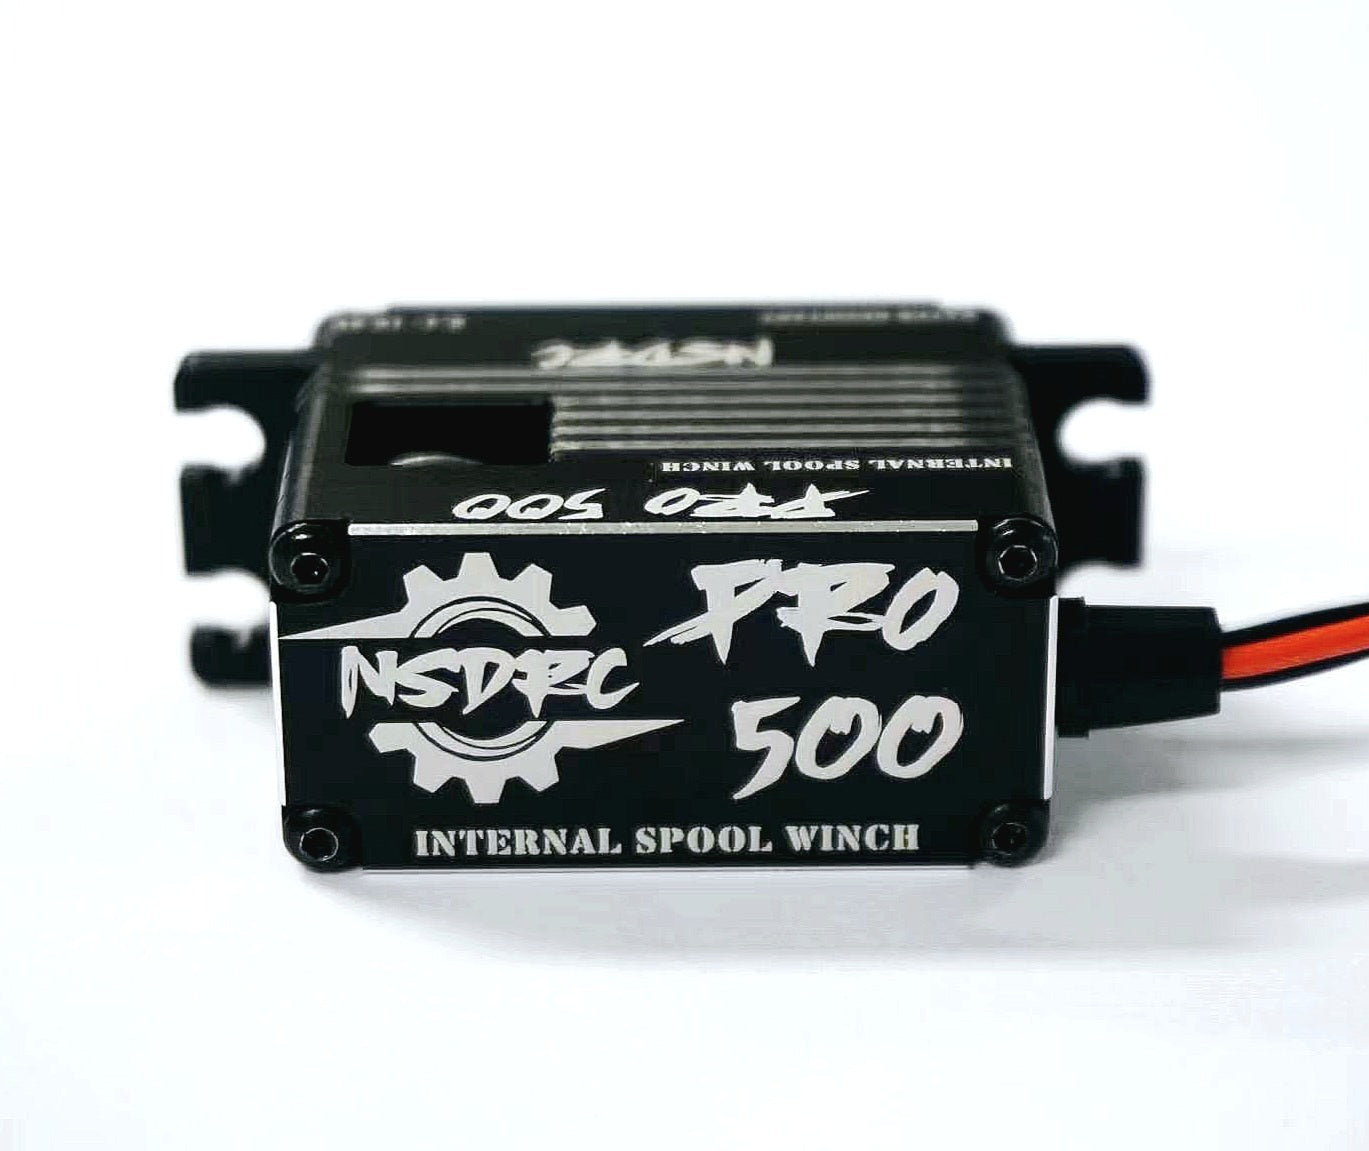 PRO 500 Internal Spool Winch